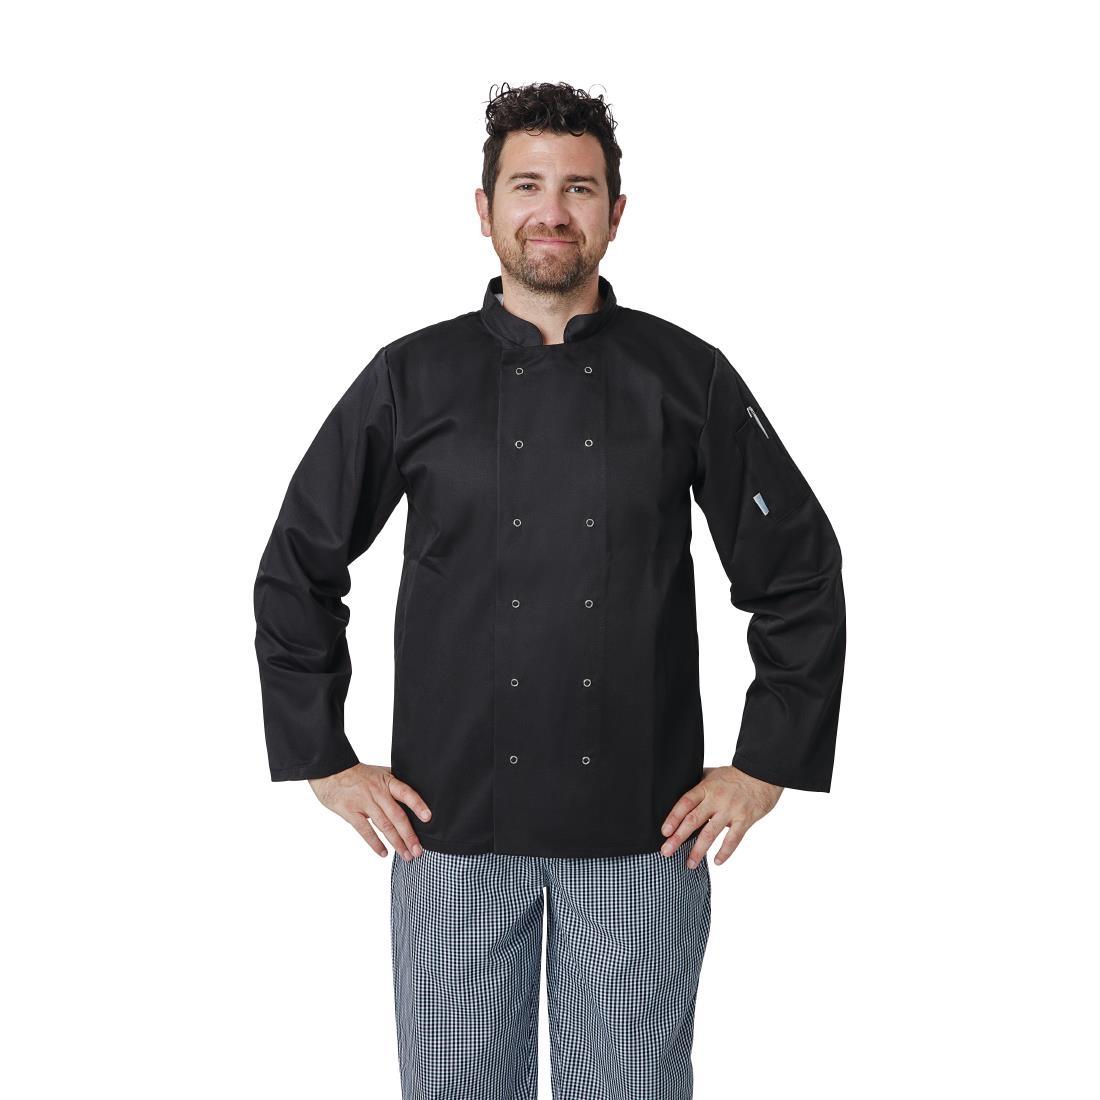 Whites Vegas Unisex Chefs Jacket Long Sleeve Black XL - A438-XL  - 5